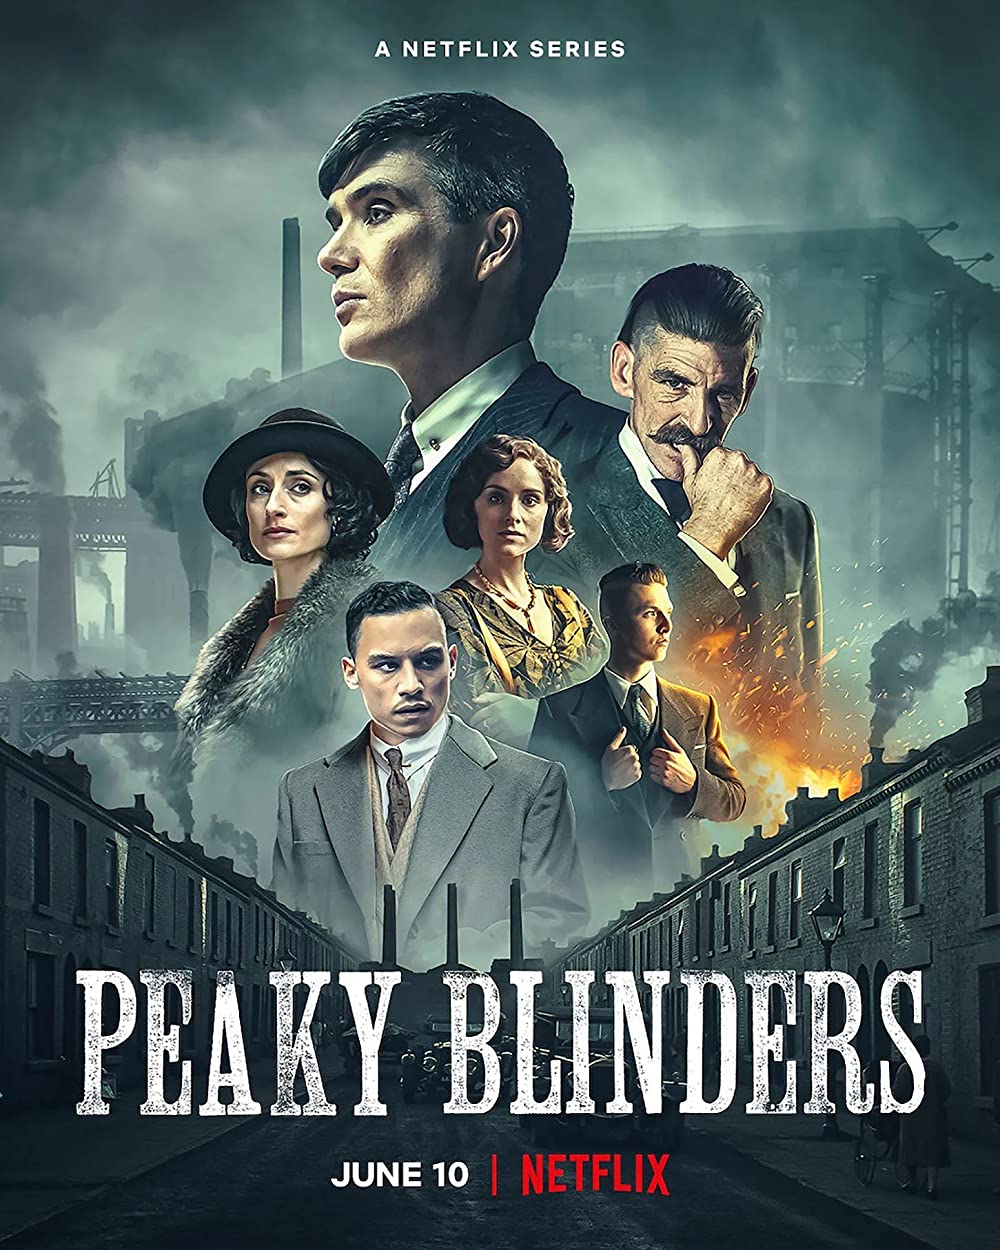 Bóng Ma Anh Quốc – Peaky Blinders (2013) Full HD Vietsub – Tập 1